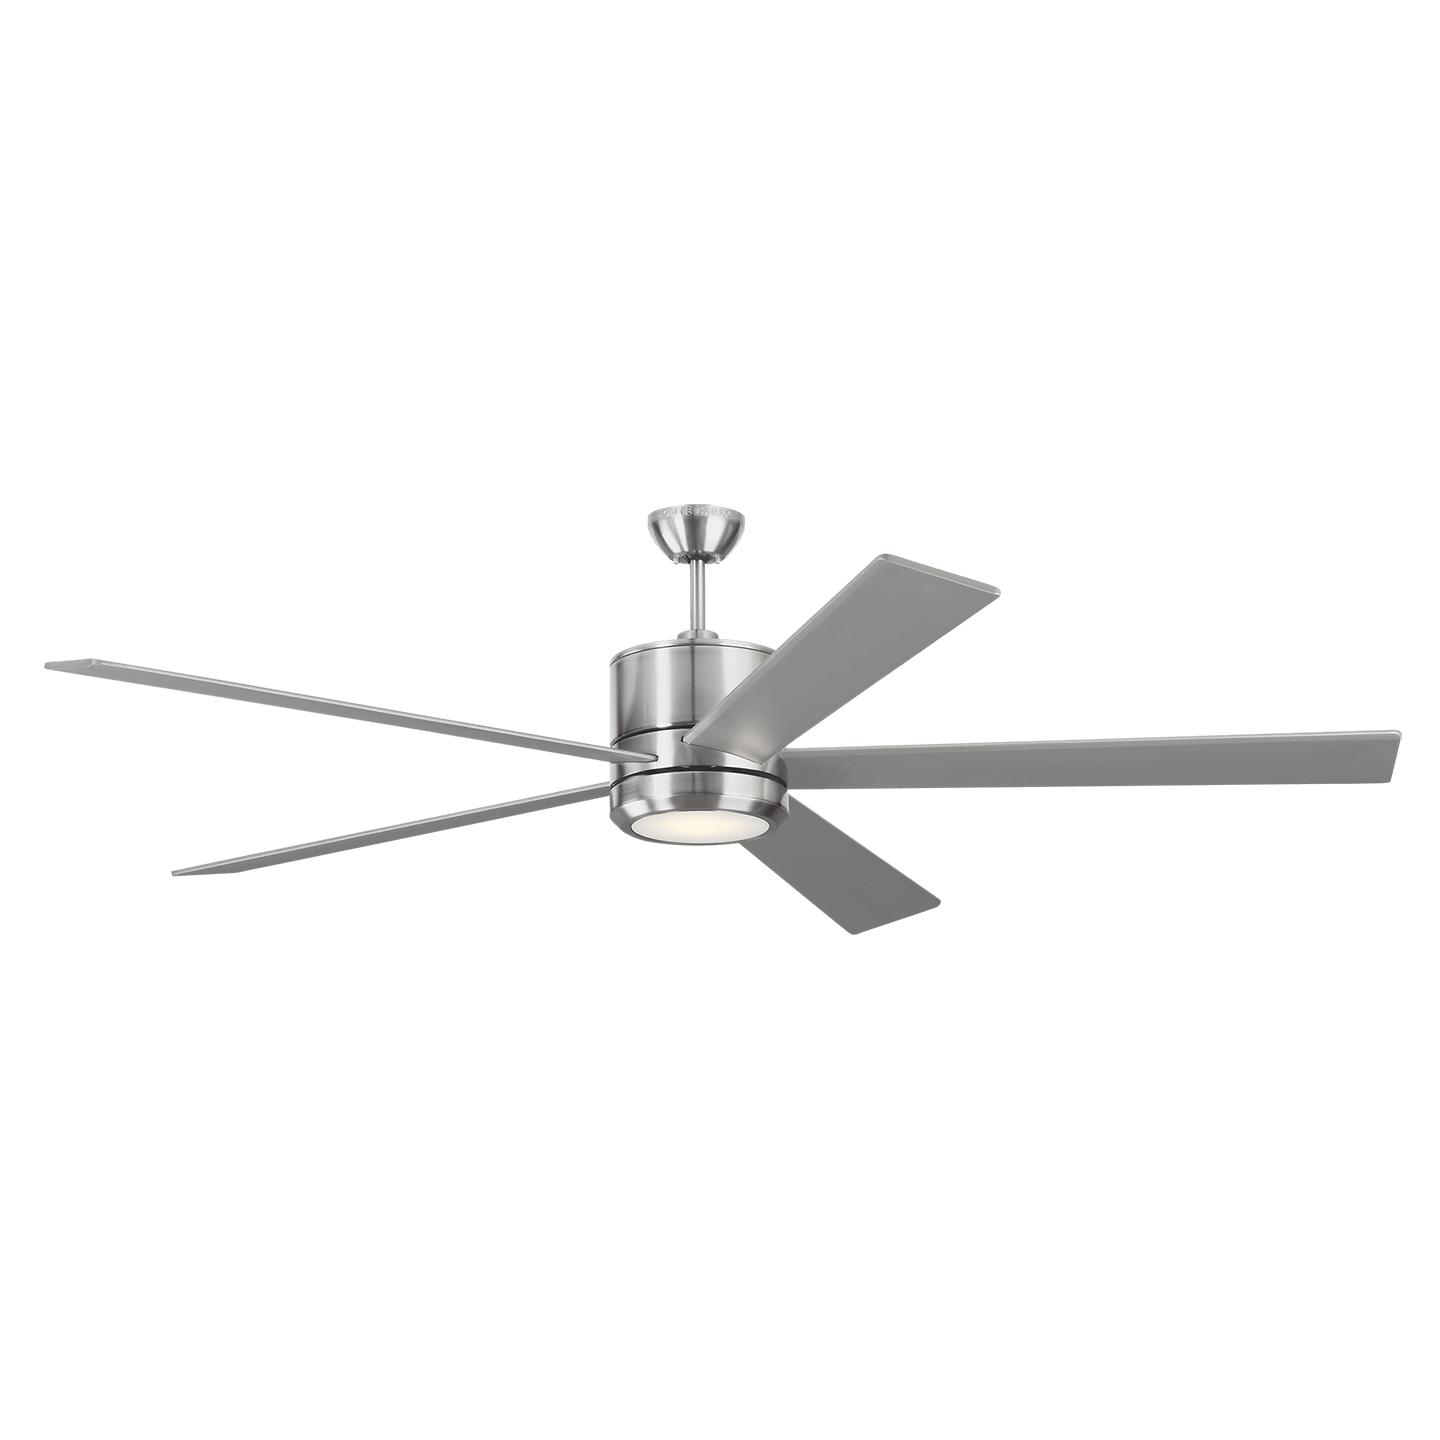 Купить Потолочный вентилятор Vision 72" LED Ceiling Fan в интернет-магазине roooms.ru